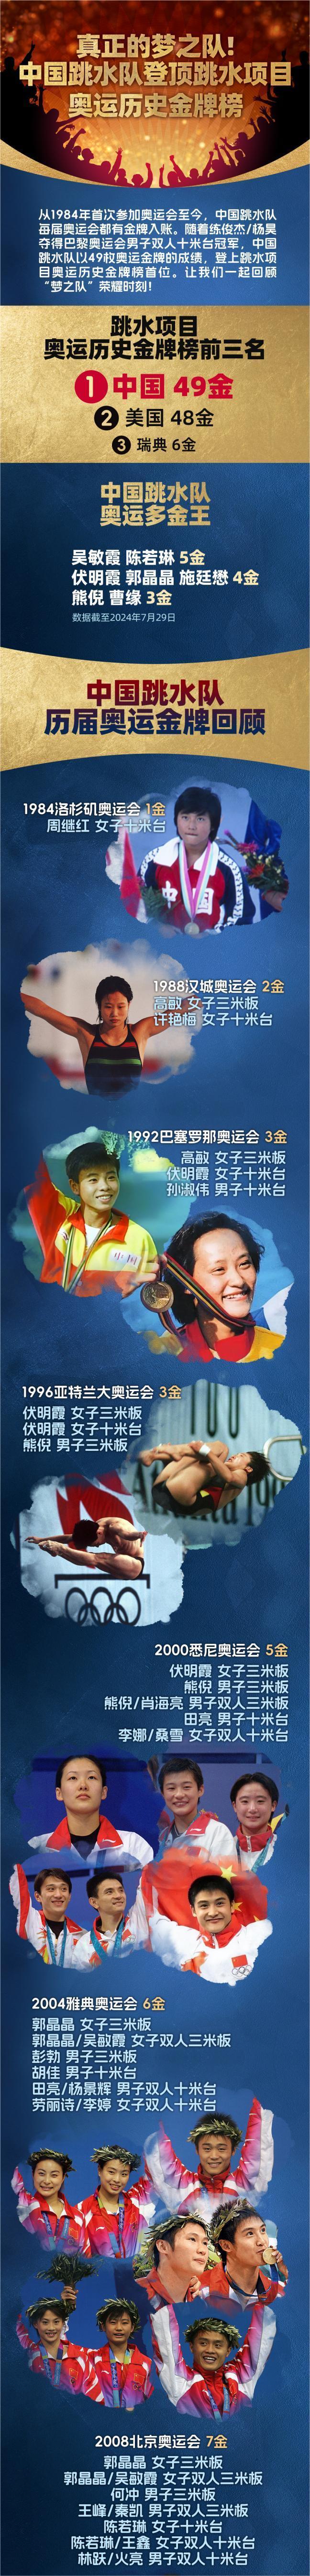 中国跳水队登顶跳水项目奥运历史金牌榜